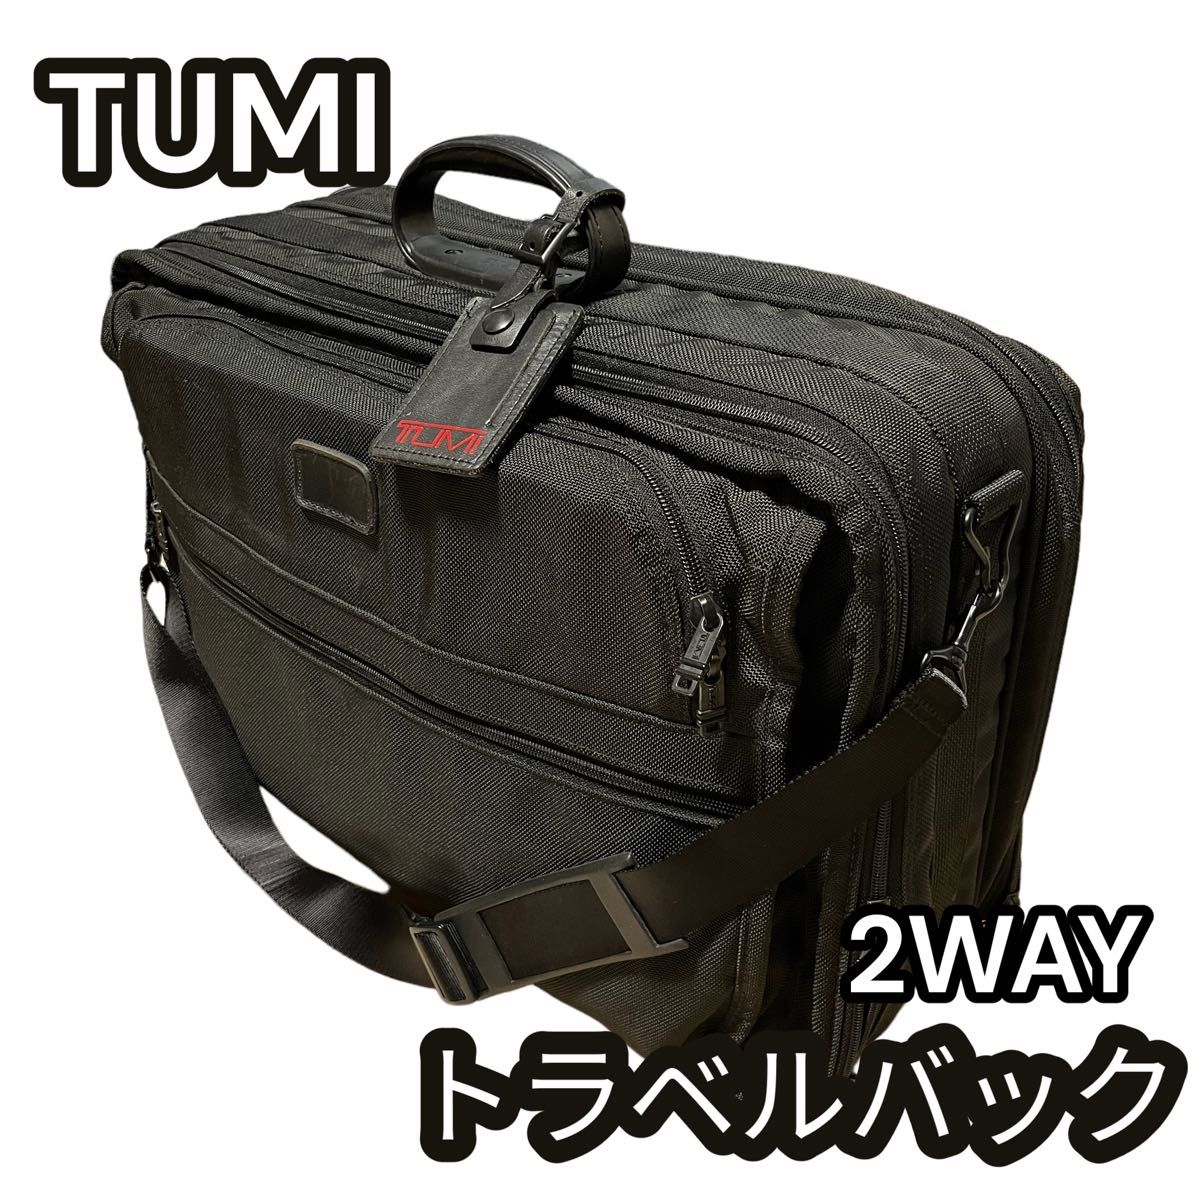 良品】TUMI トゥミ トラベルバック 2WAY ブラック ブリーフケース